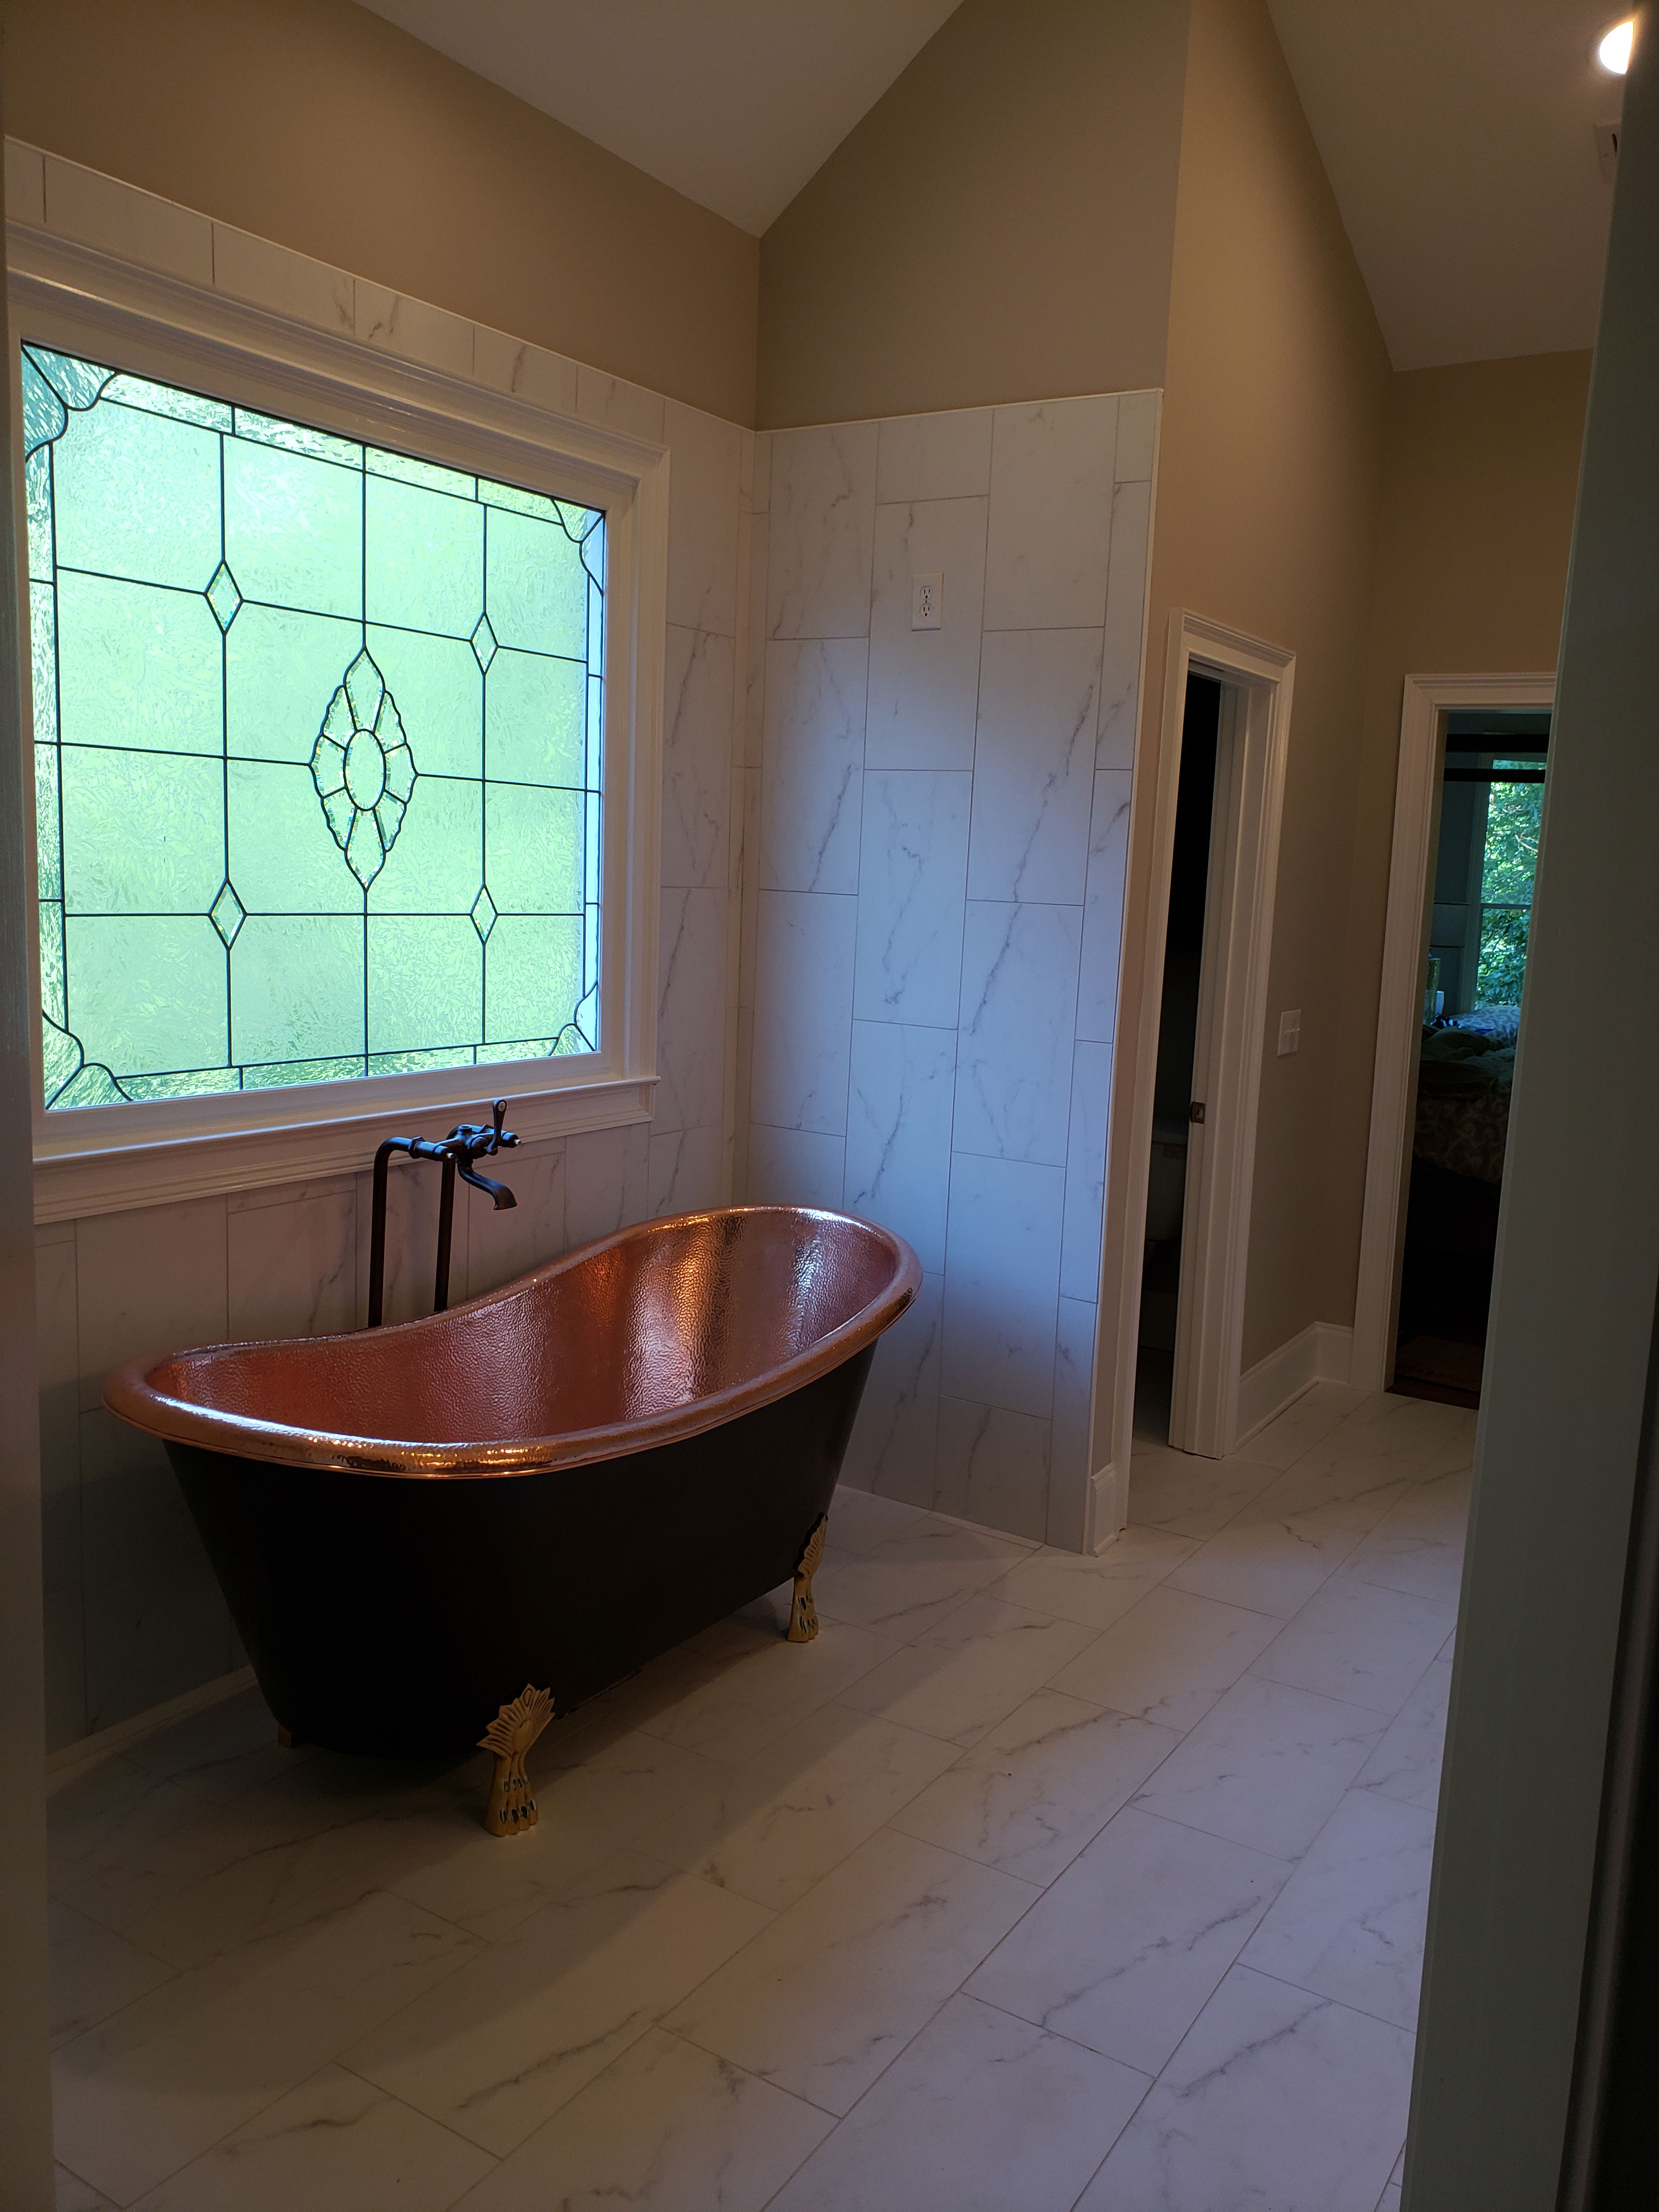 Luxurious bathroom design idea with a stylish bathtub and elegant marble backsplash